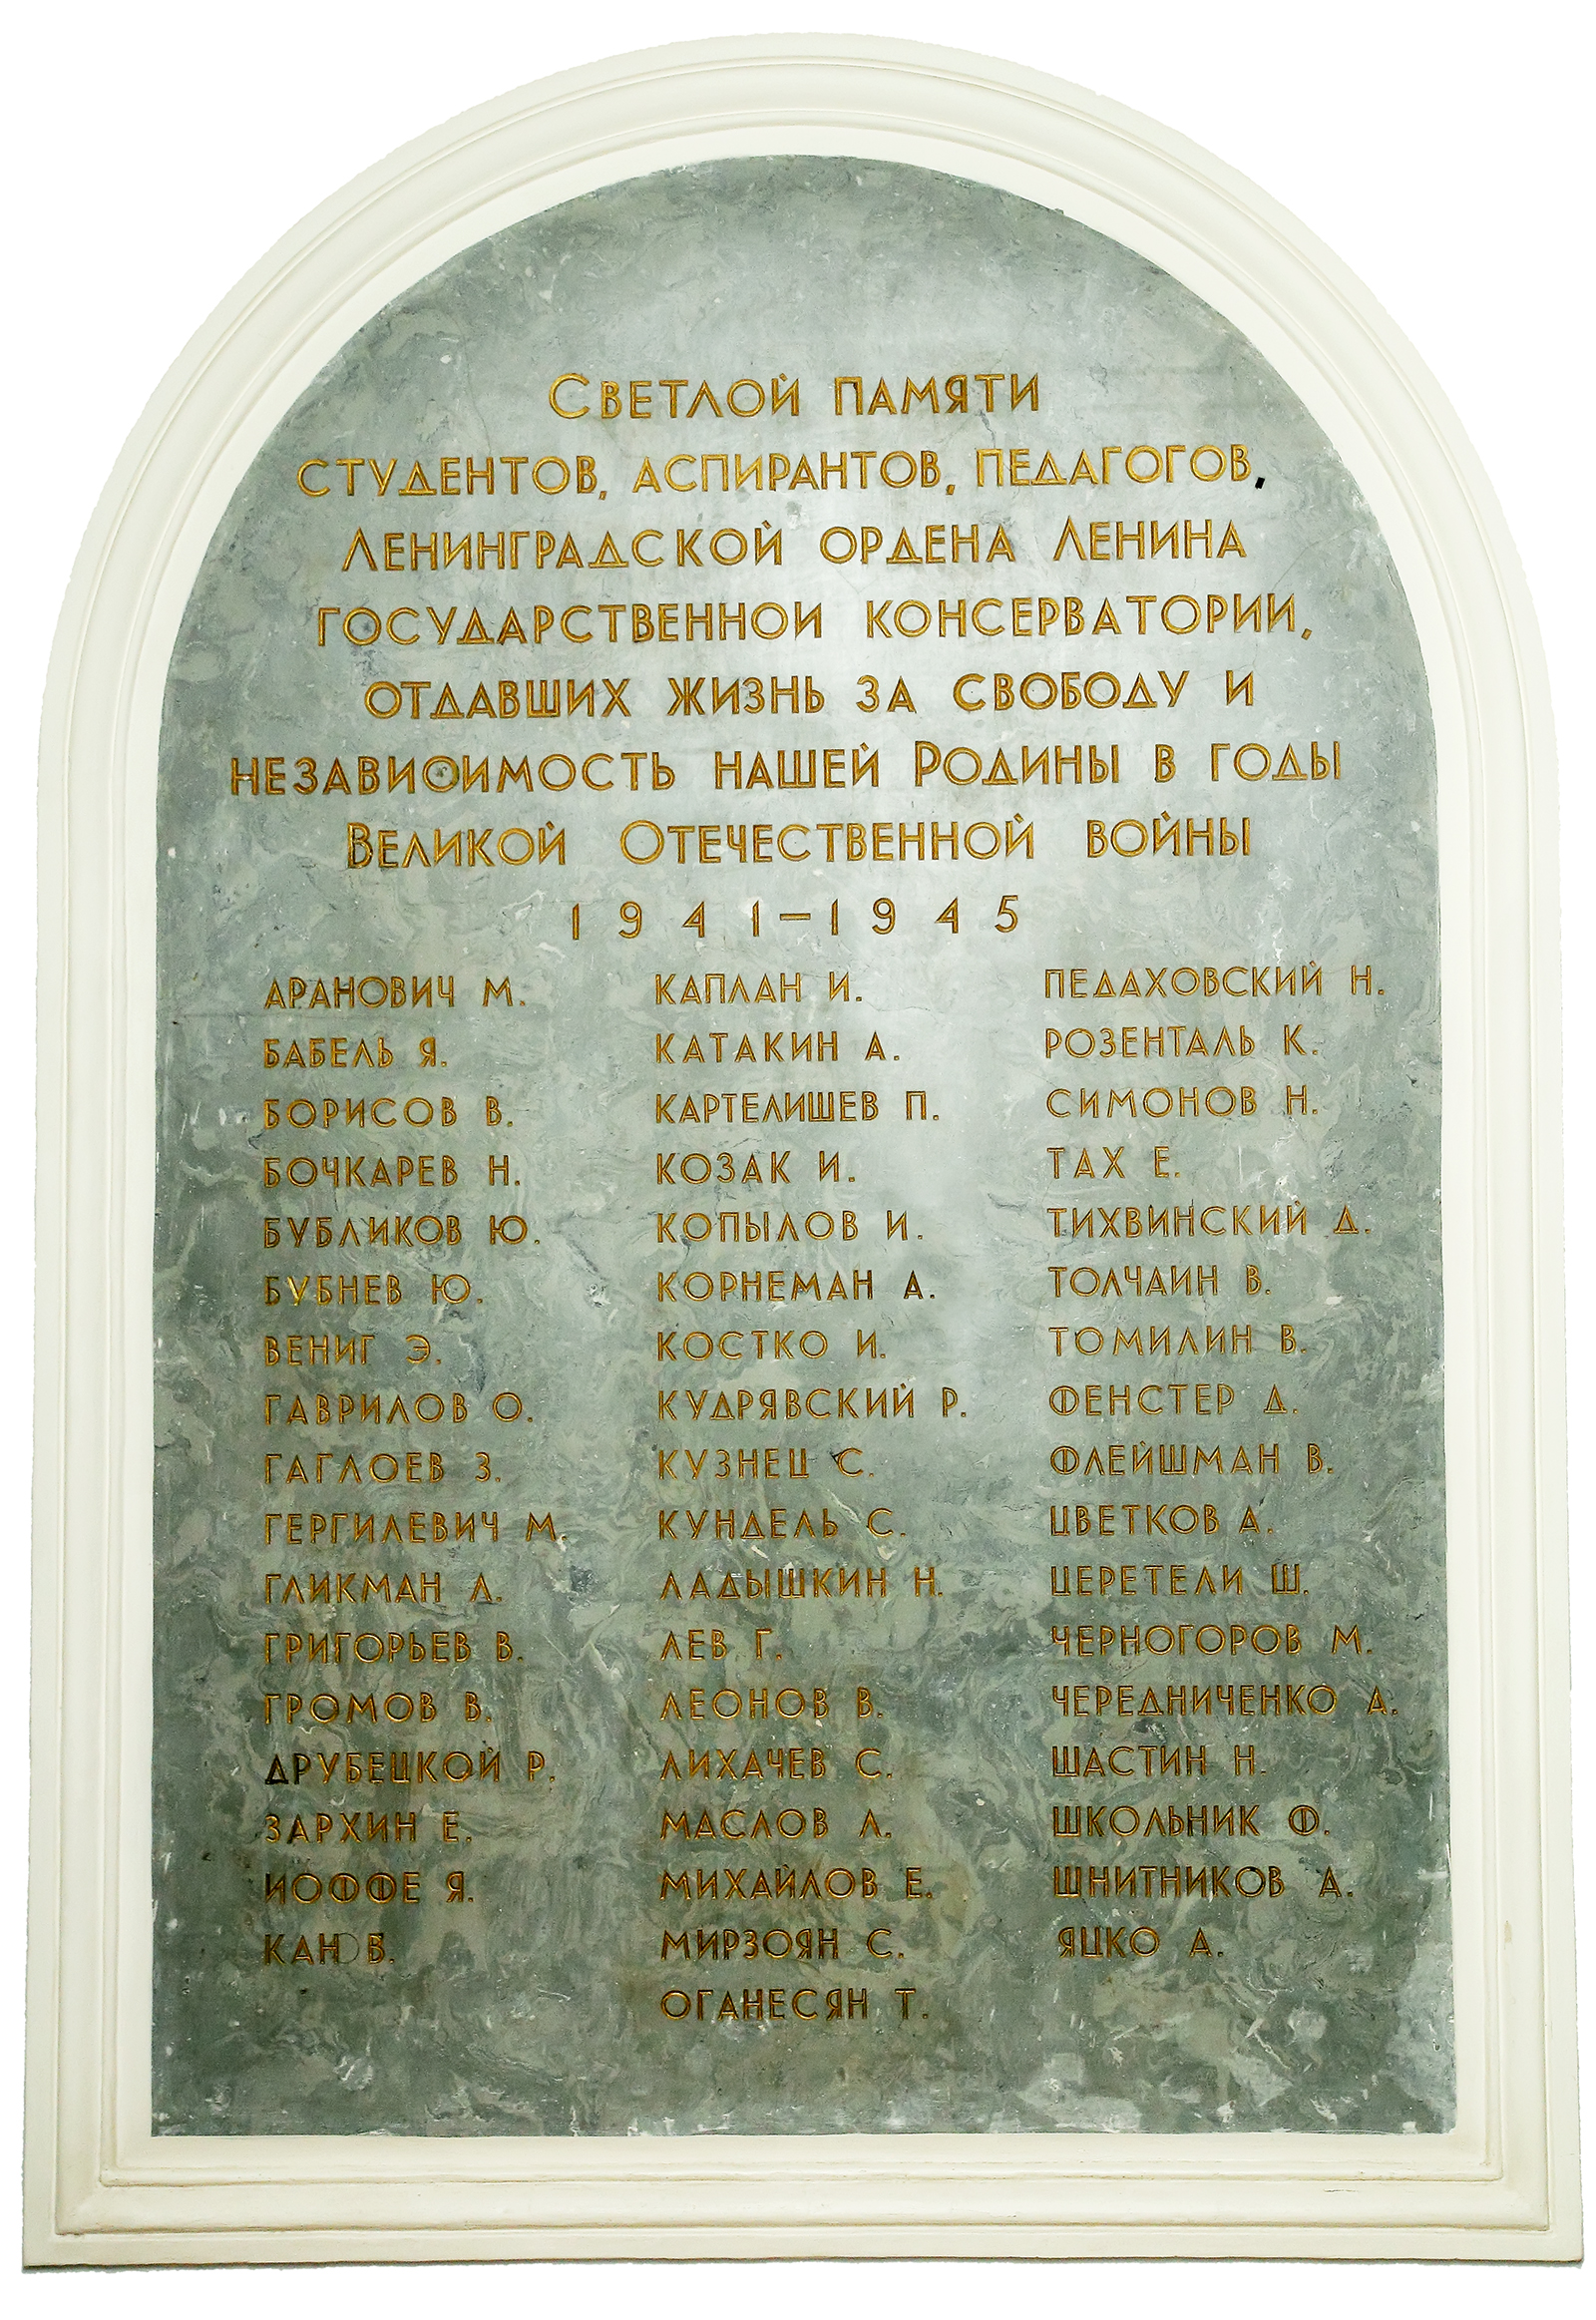 Мемориальная доска памяти студентов, аспирантов, педагогов Ленинградской консерватории, погибших в годы ВОВ. 1941-1945